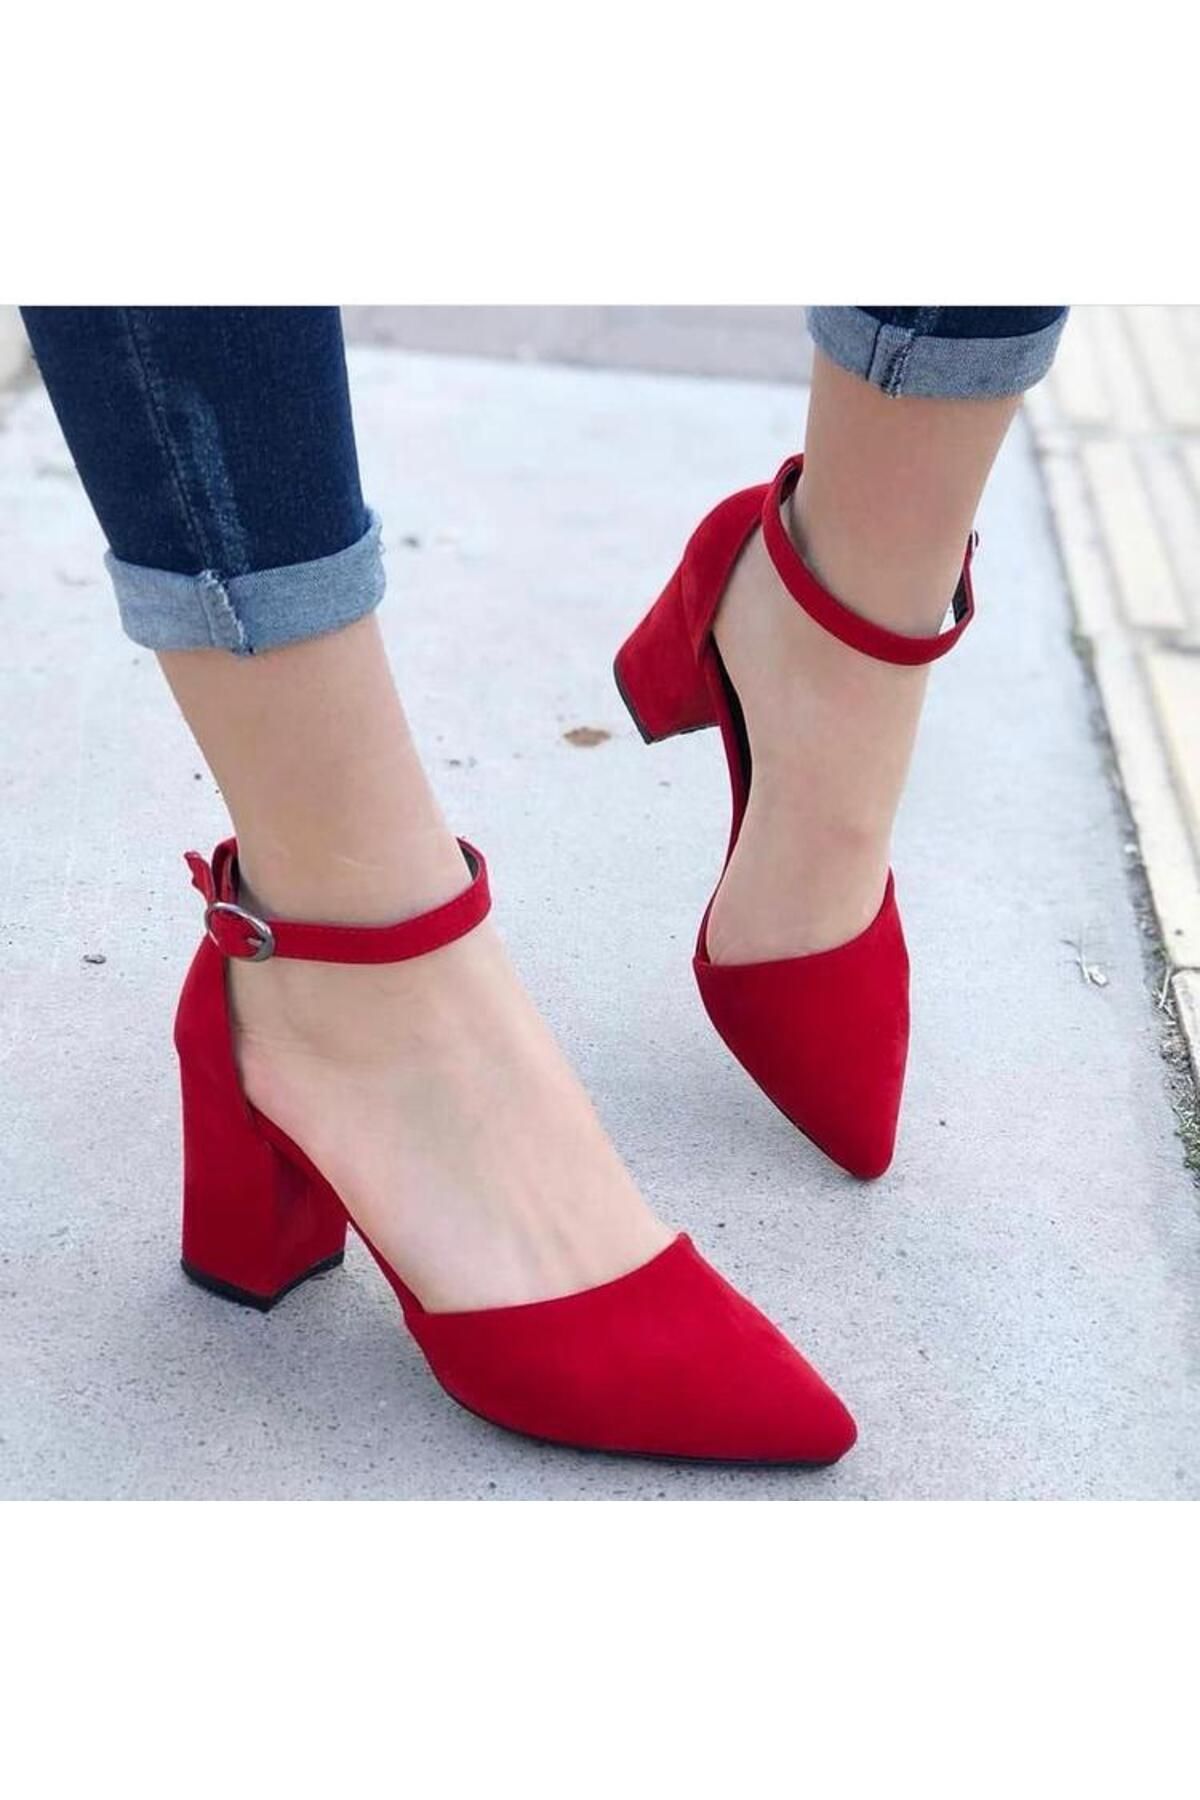 Demashoes Kadın Kırmızı Süet Topuklu Ayakkabı